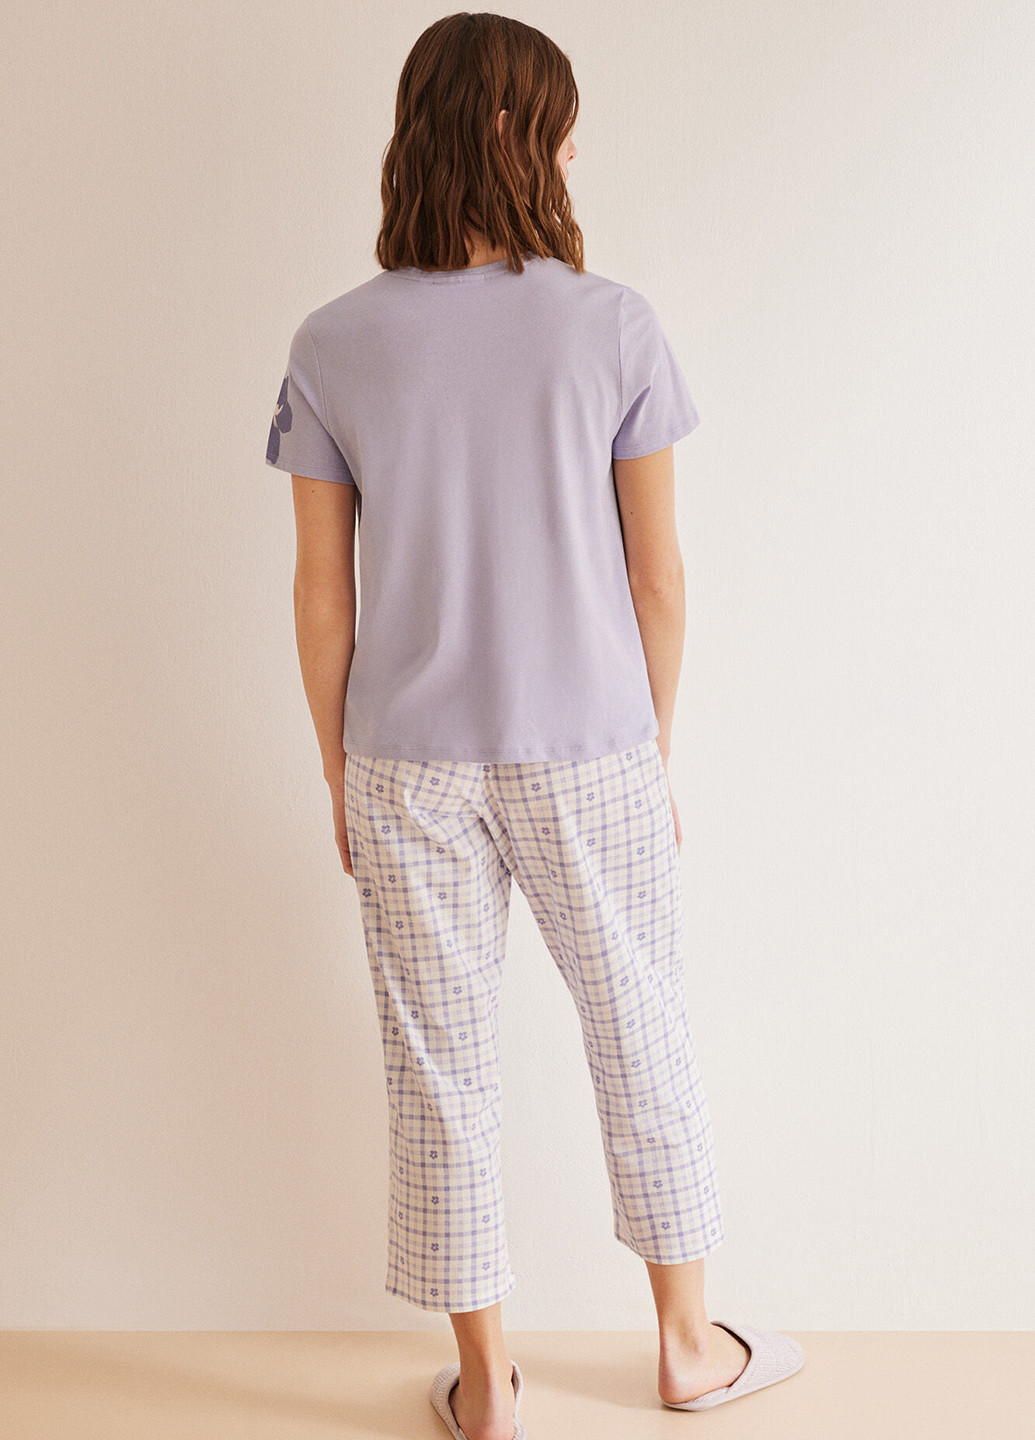 Сиреневая всесезон пижама (футболка, брюки) футболка + брюки Women'secret